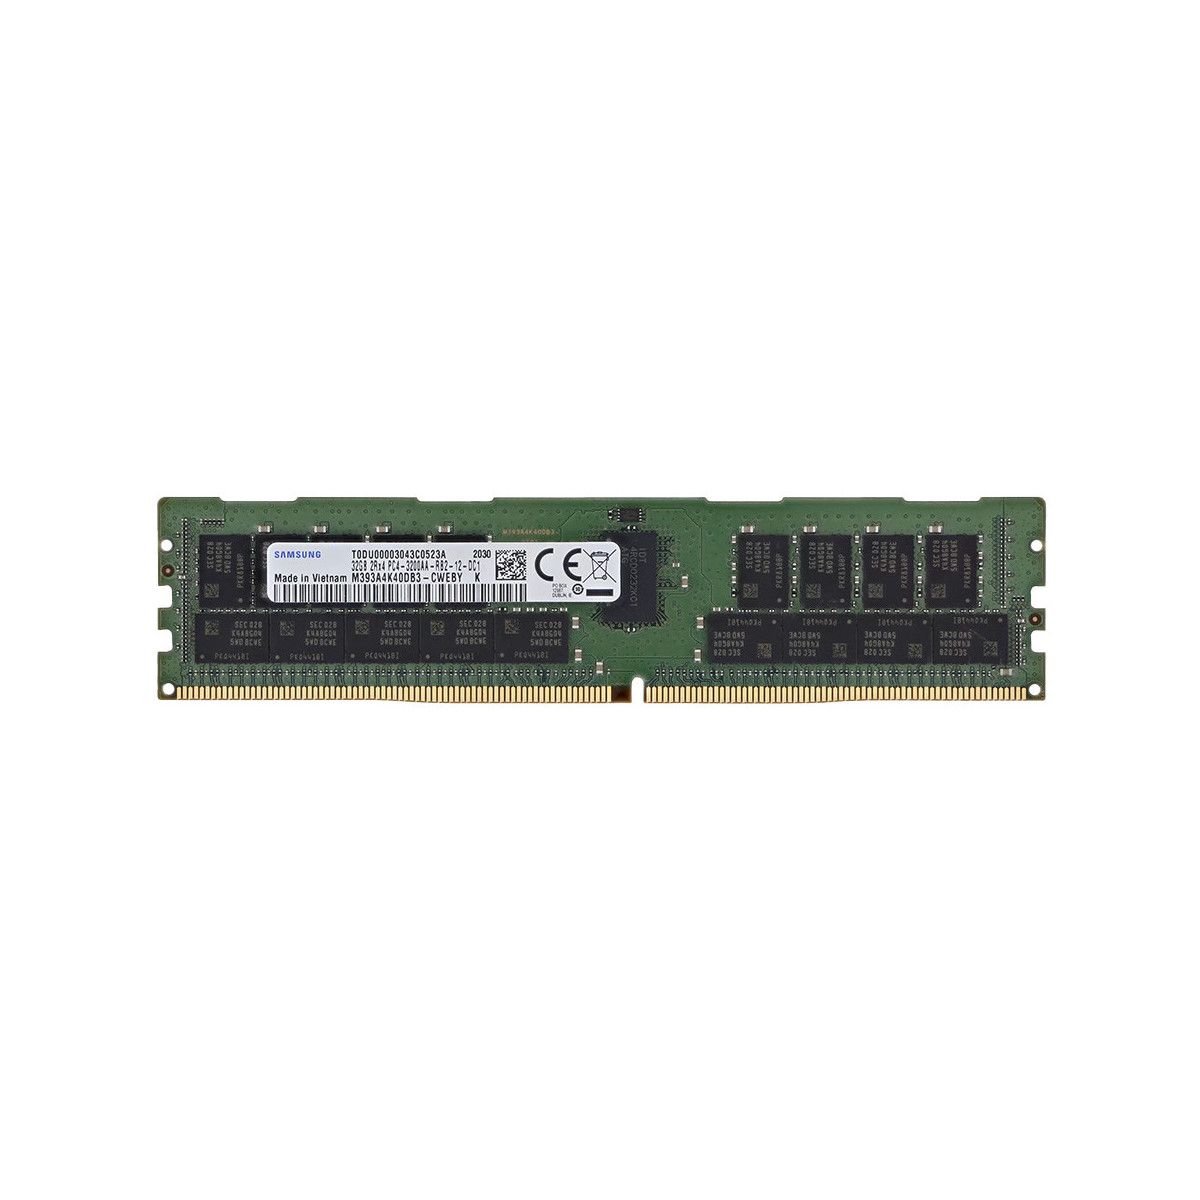 AB663423-MS - Memstar 1x 32GB DDR4-3200 RDIMM PC4-25600R - Mem-Star compatibel OEM geheugen 1 - Memstar 